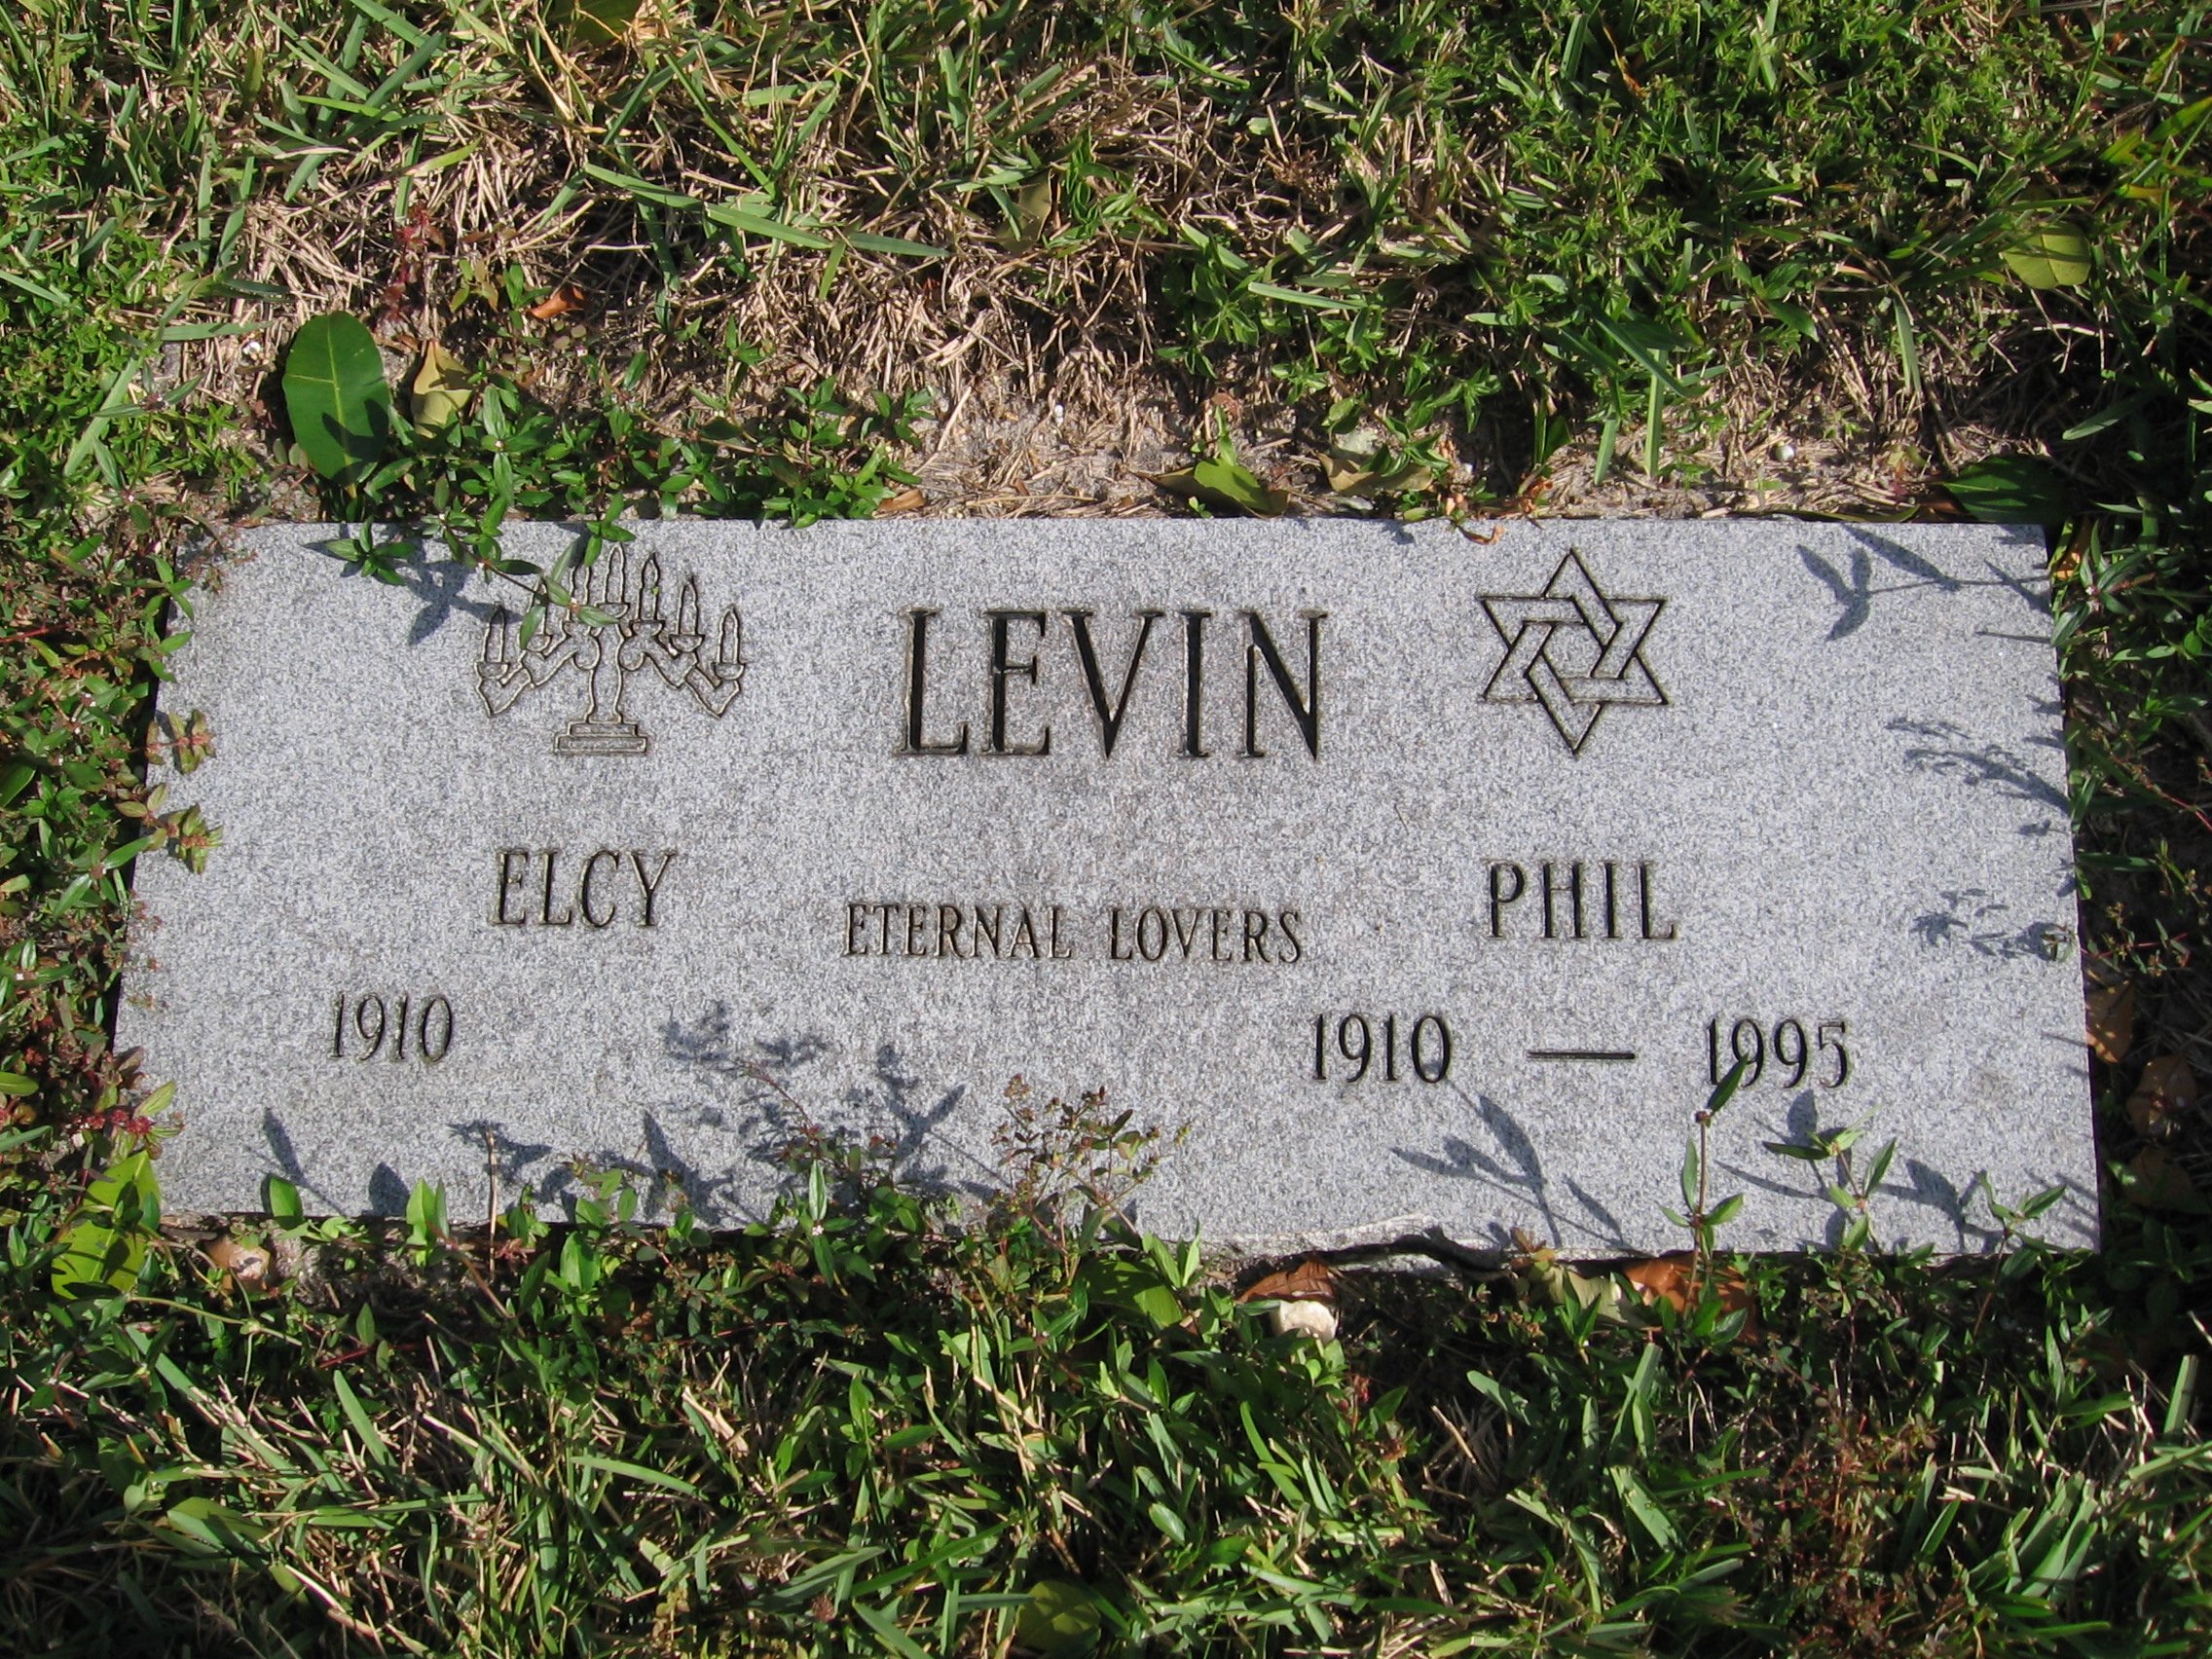 Phil Levin